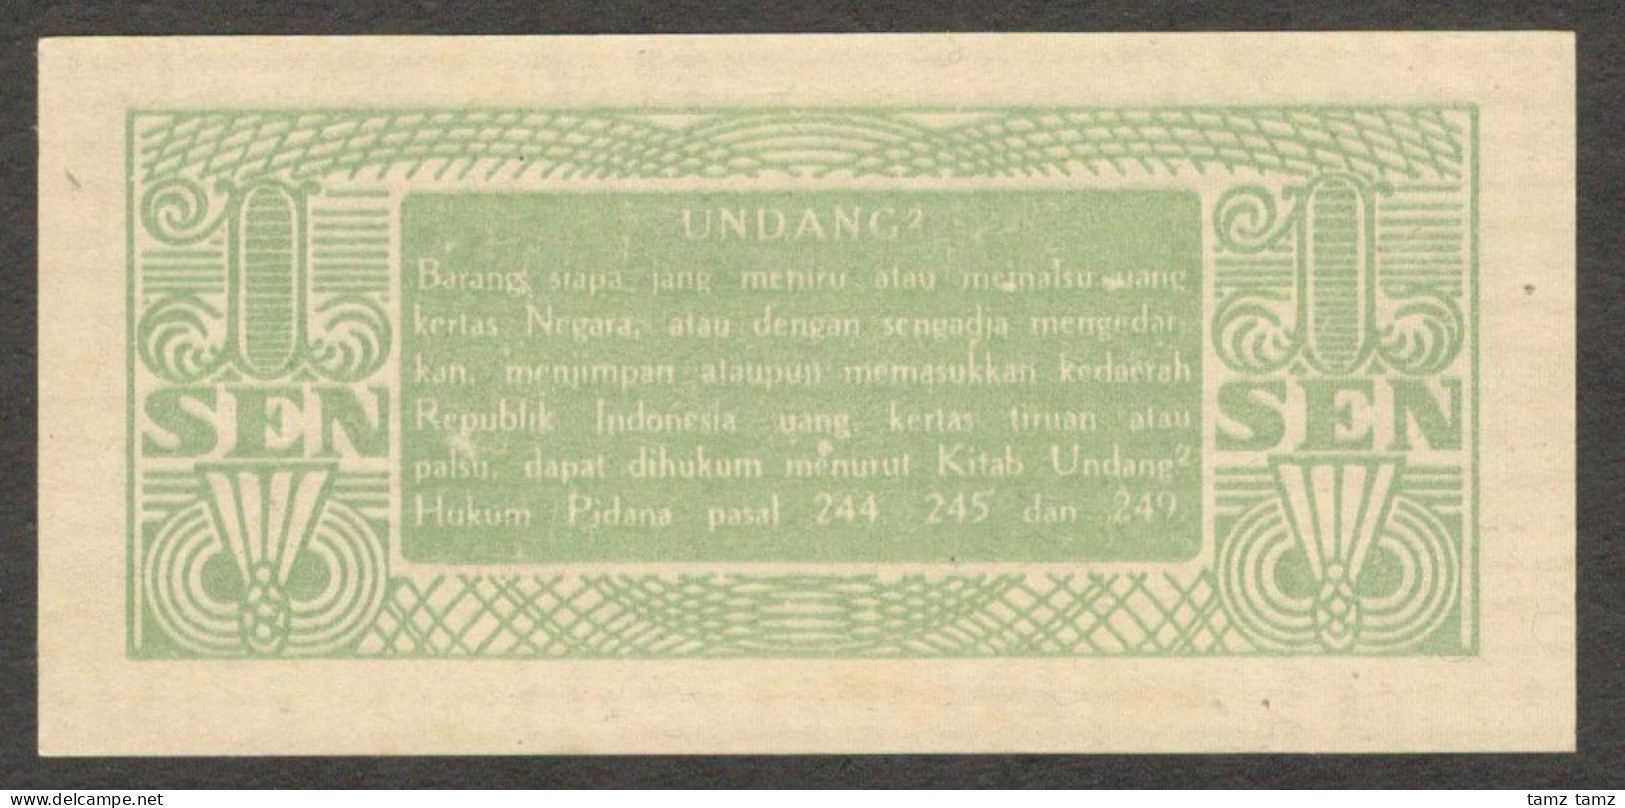 Oeang Republik Indonesia (ORI) 1 Sen 1945 P-13 UNC - Indonésie